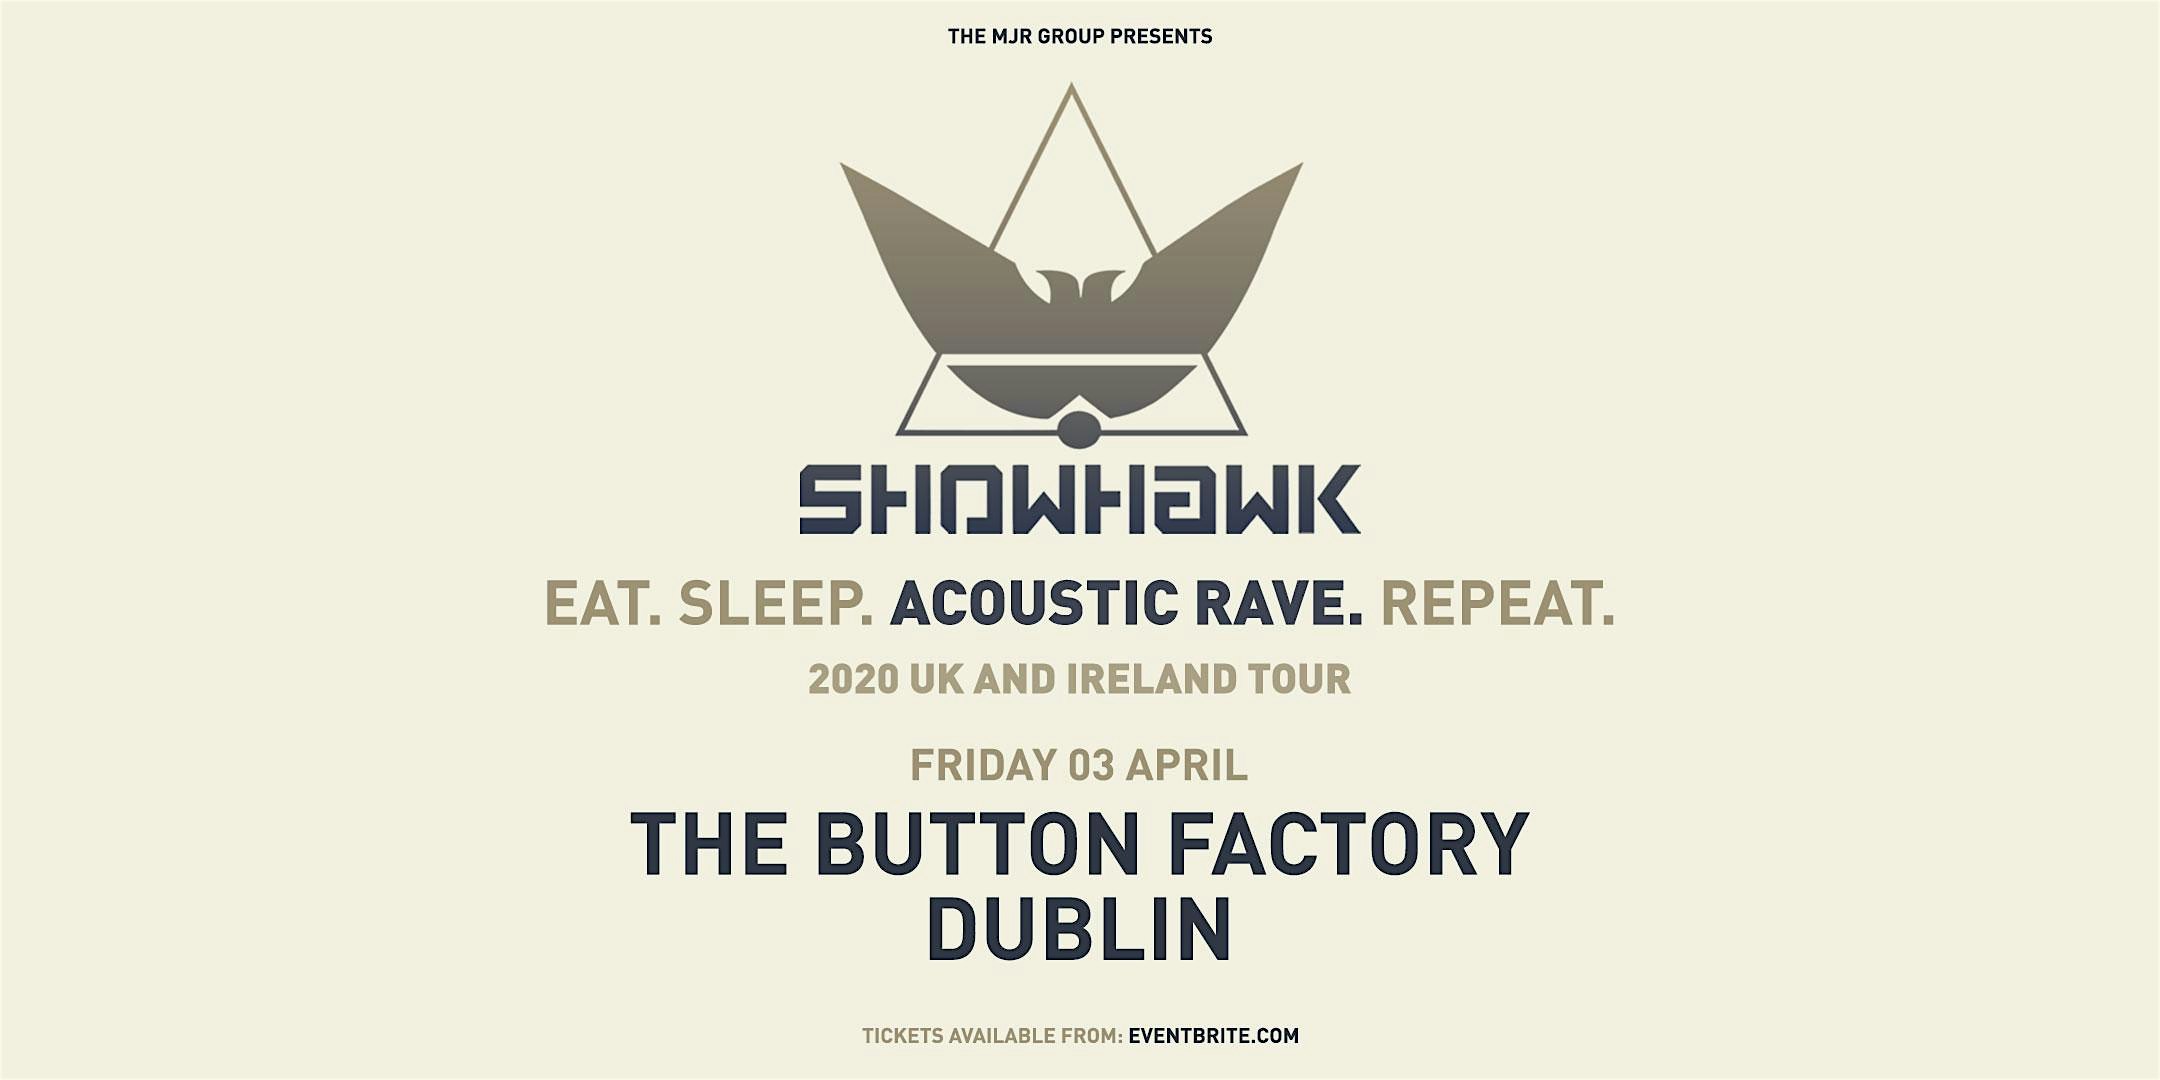 Showhawk Duo (The Button Factory, Dublin)